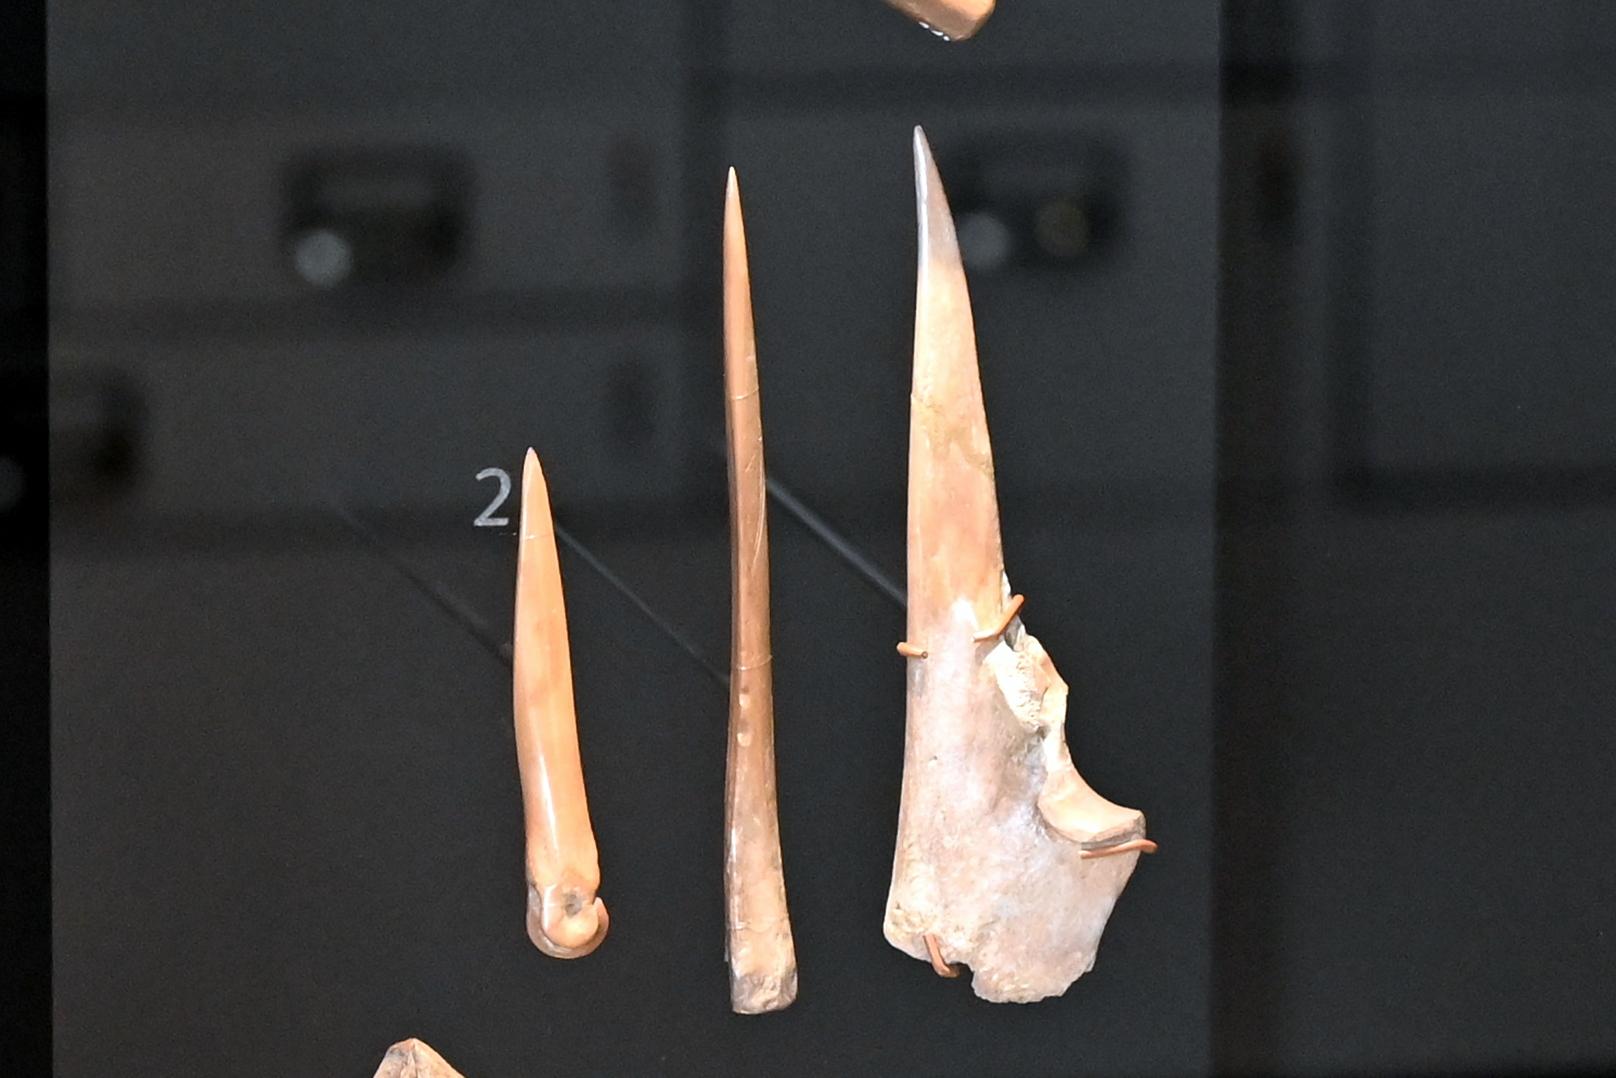 Drei Pfrieme, Neolithikum (Jungsteinzeit), 5500 - 1700 v. Chr., 3900 v. Chr., Bild 1/2